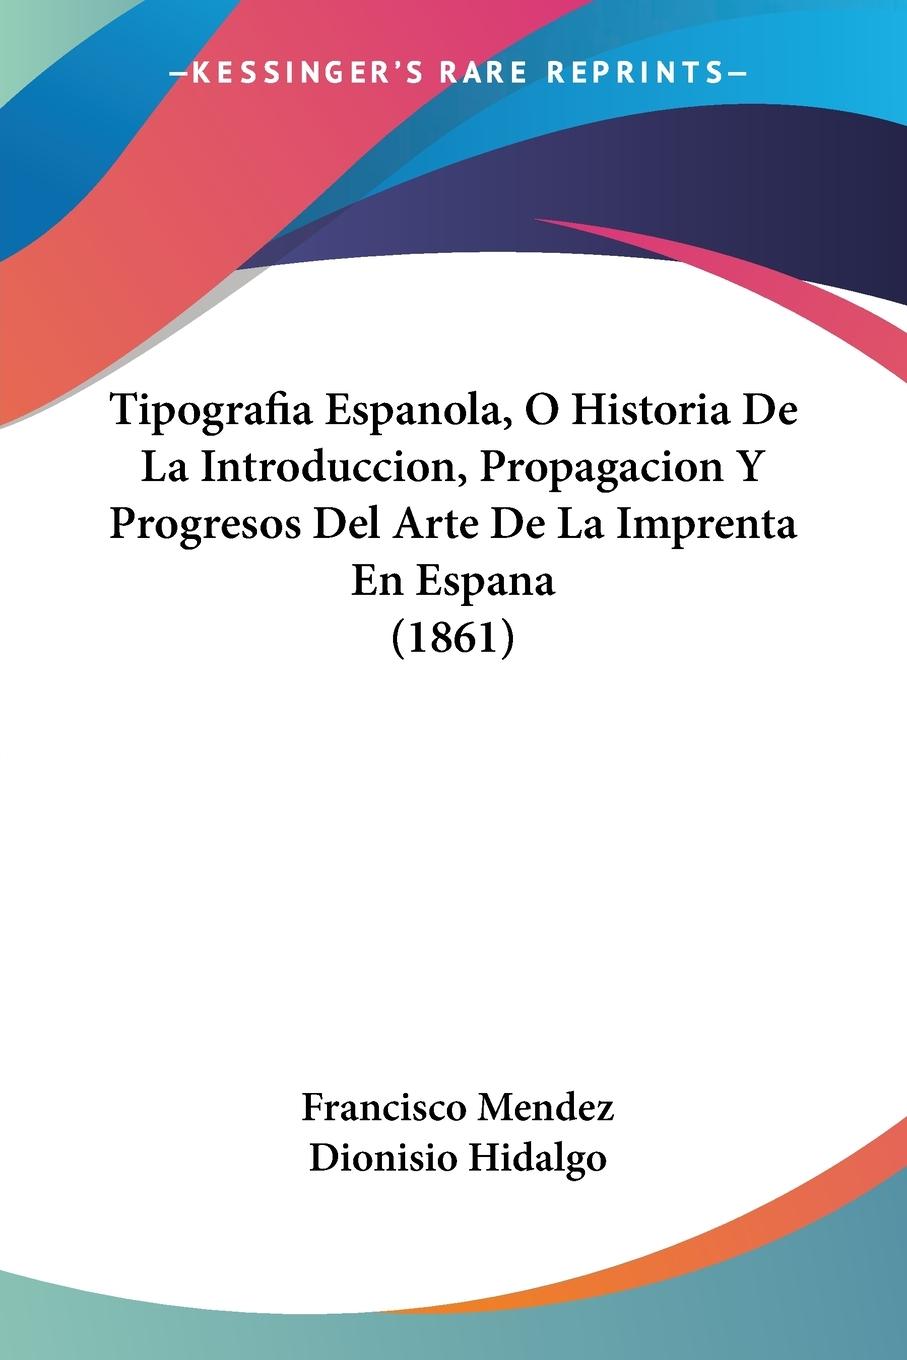 Tipografia Espanola, O Historia De La Introduccion, Propagacion Y Progresos Del Arte De La Imprenta En Espana (1861) - Mendez, Francisco